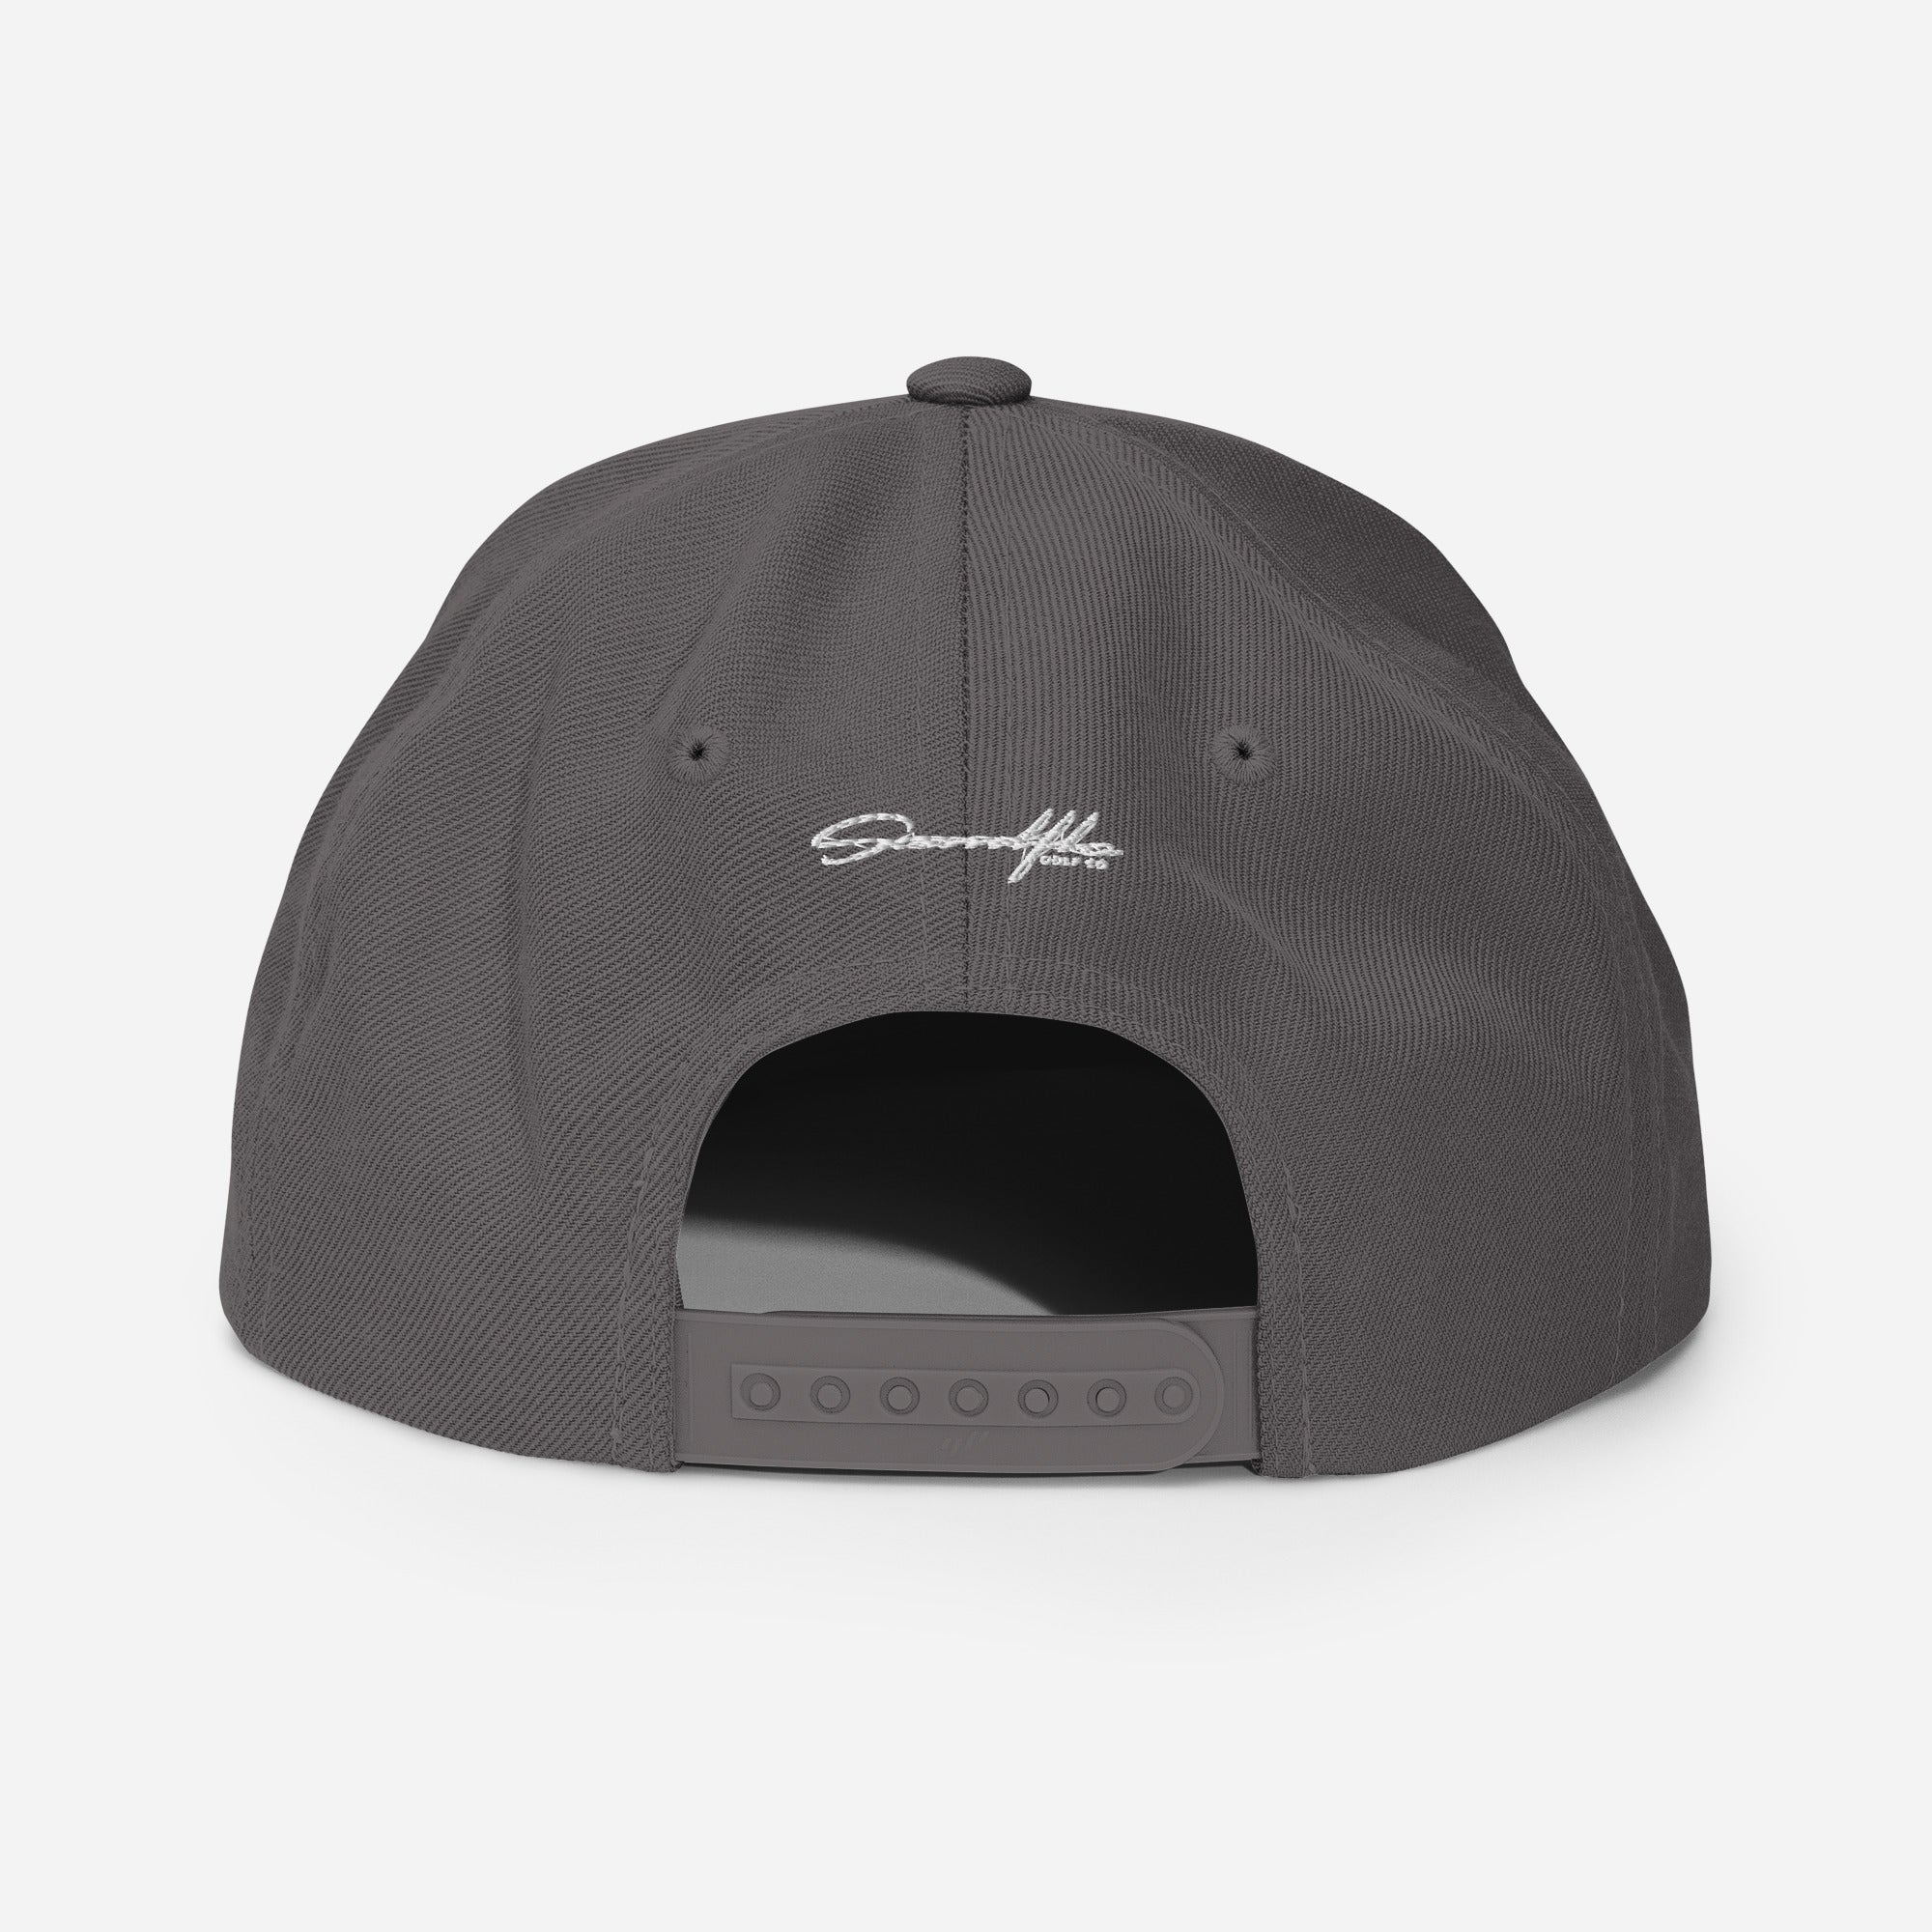 OG Logo Embroided Snapback Hat